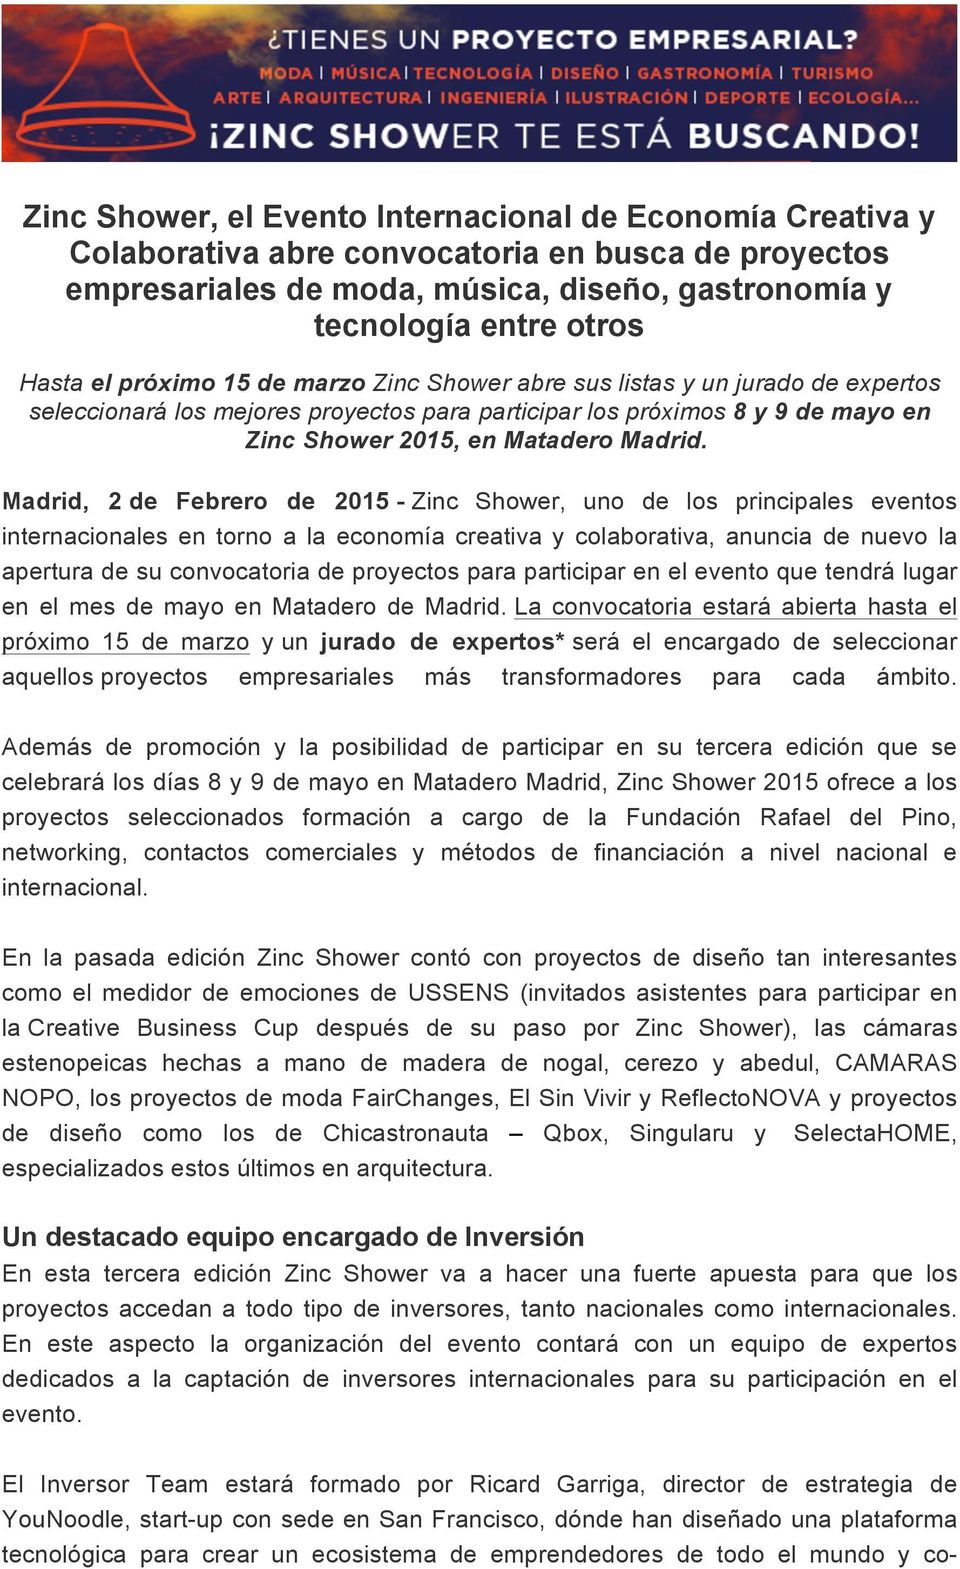 Madrid, 2 de Febrero de 2015 - Zinc Shower, uno de los principales eventos internacionales en torno a la economía creativa y colaborativa, anuncia de nuevo la apertura de su convocatoria de proyectos